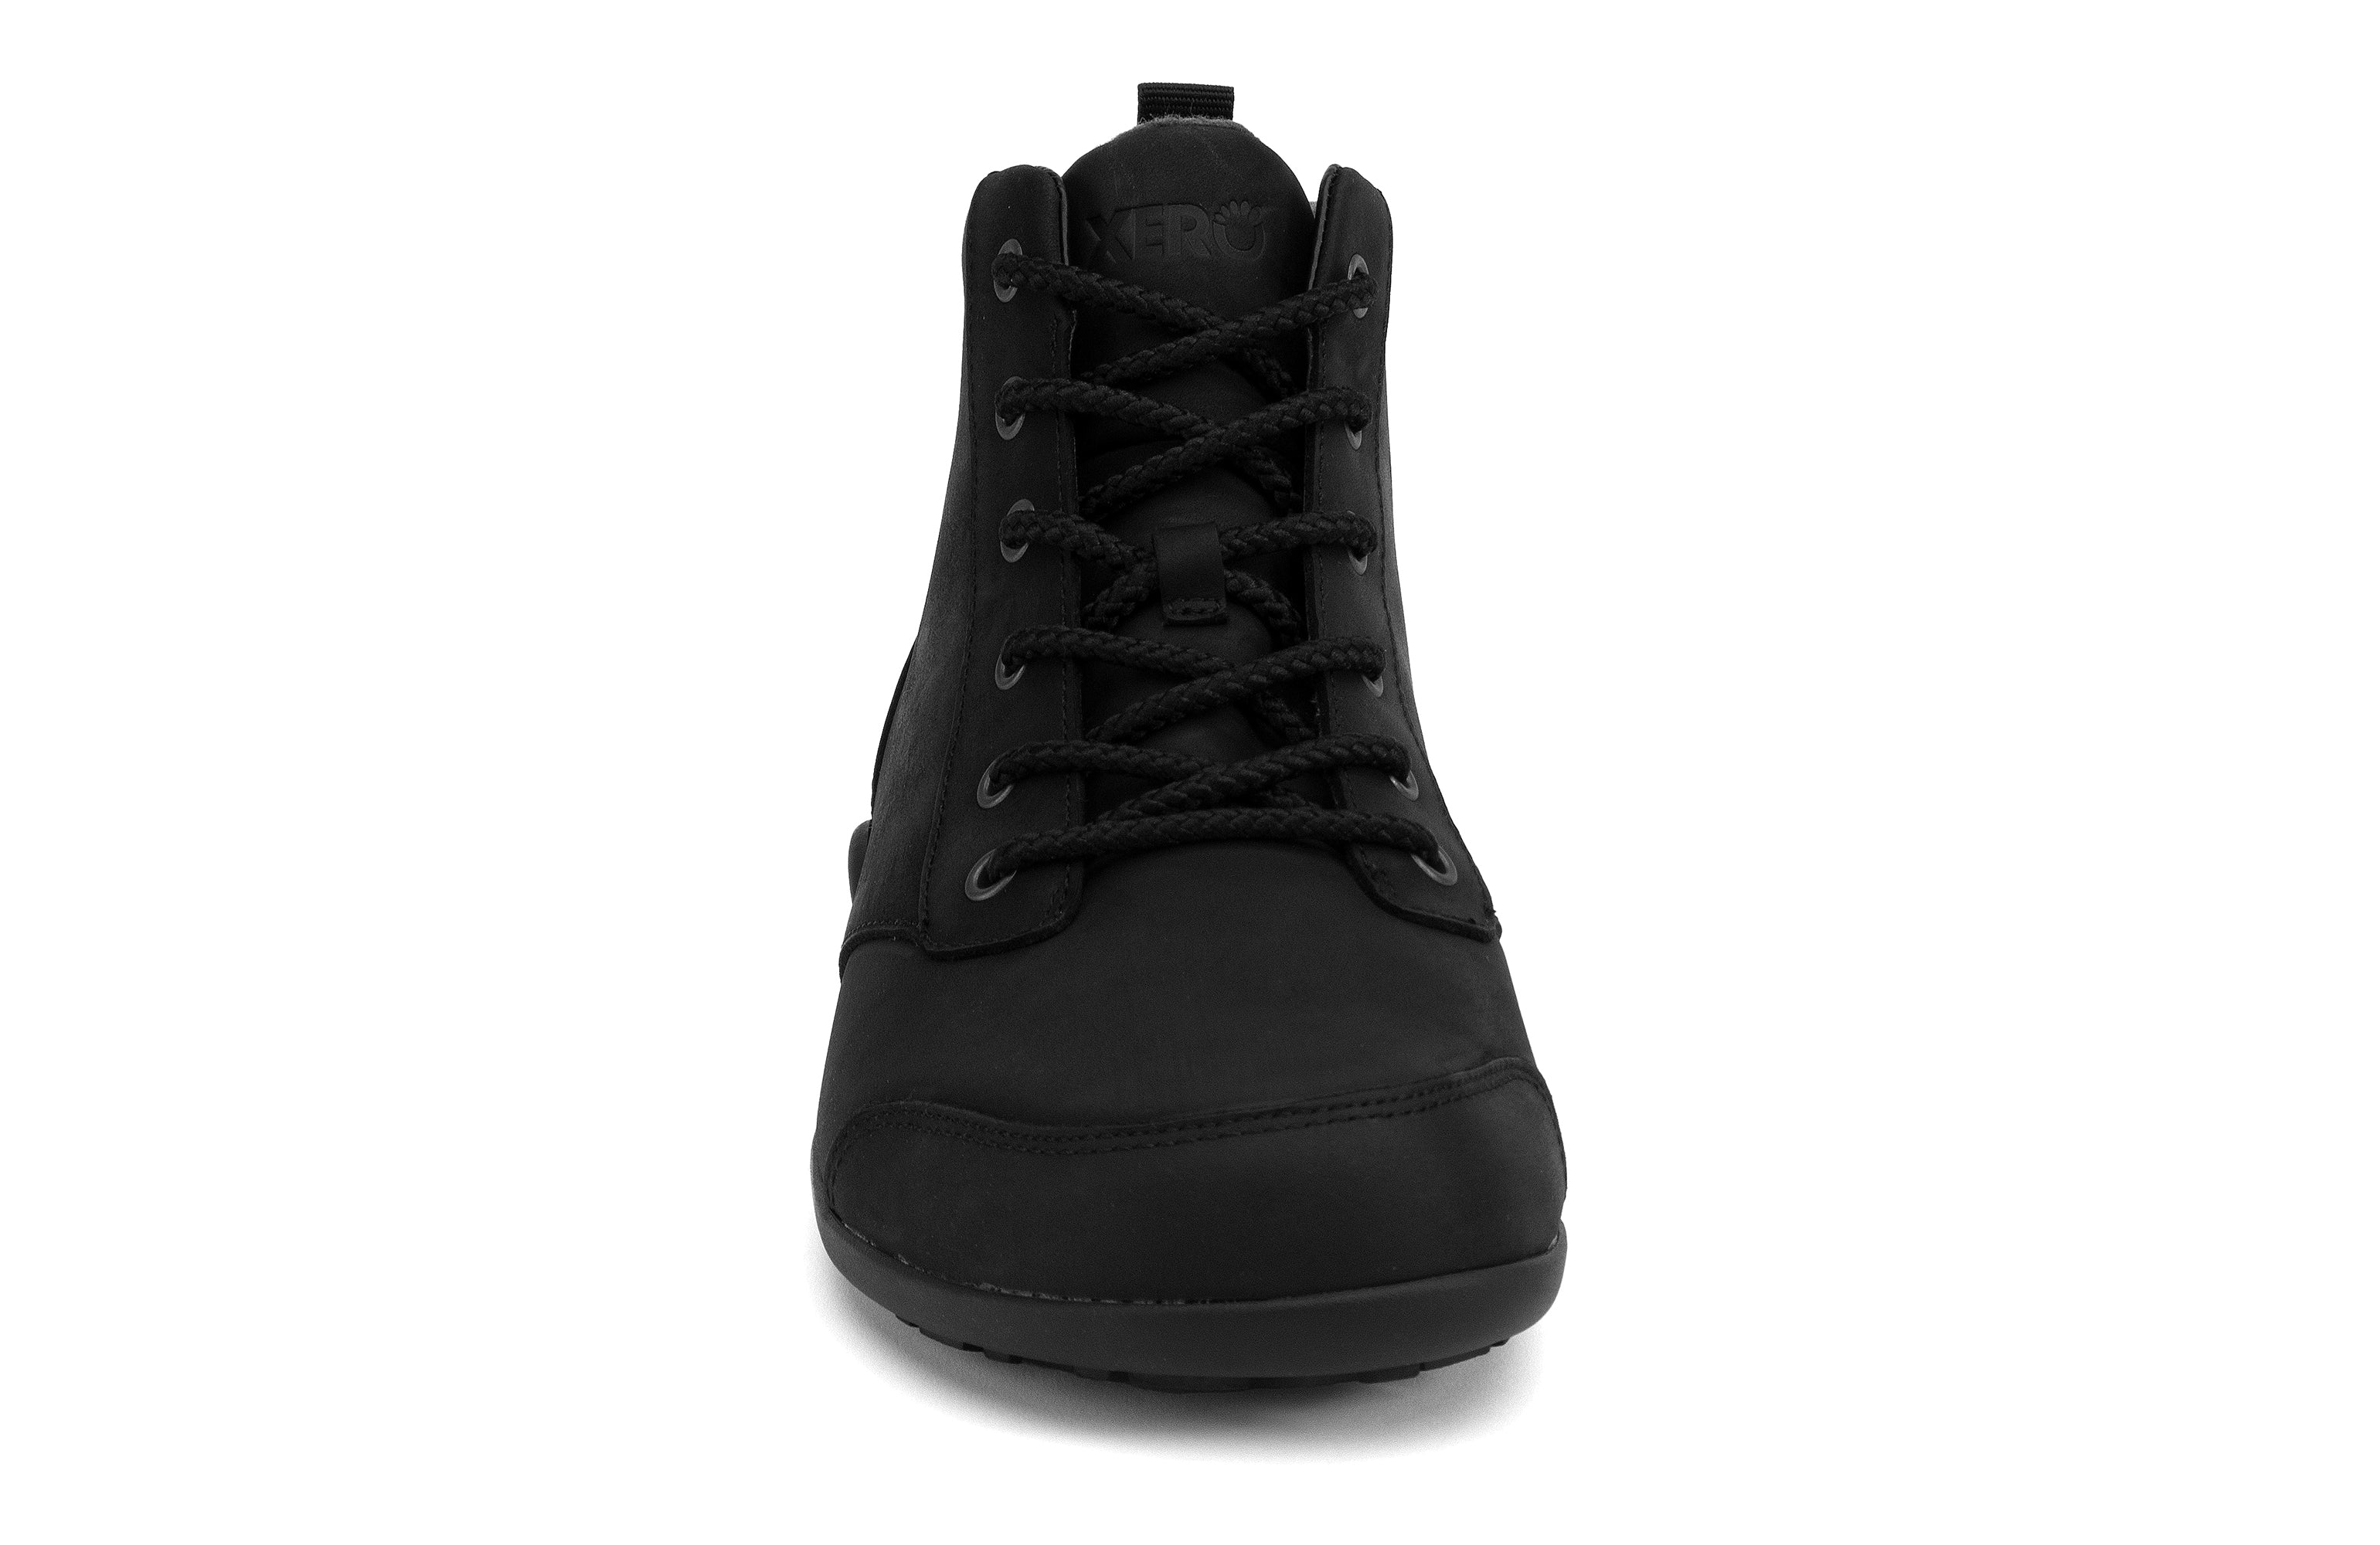 Xero Shoes Denver Leather barfods vinterstøvler til mænd i farven black, forfra